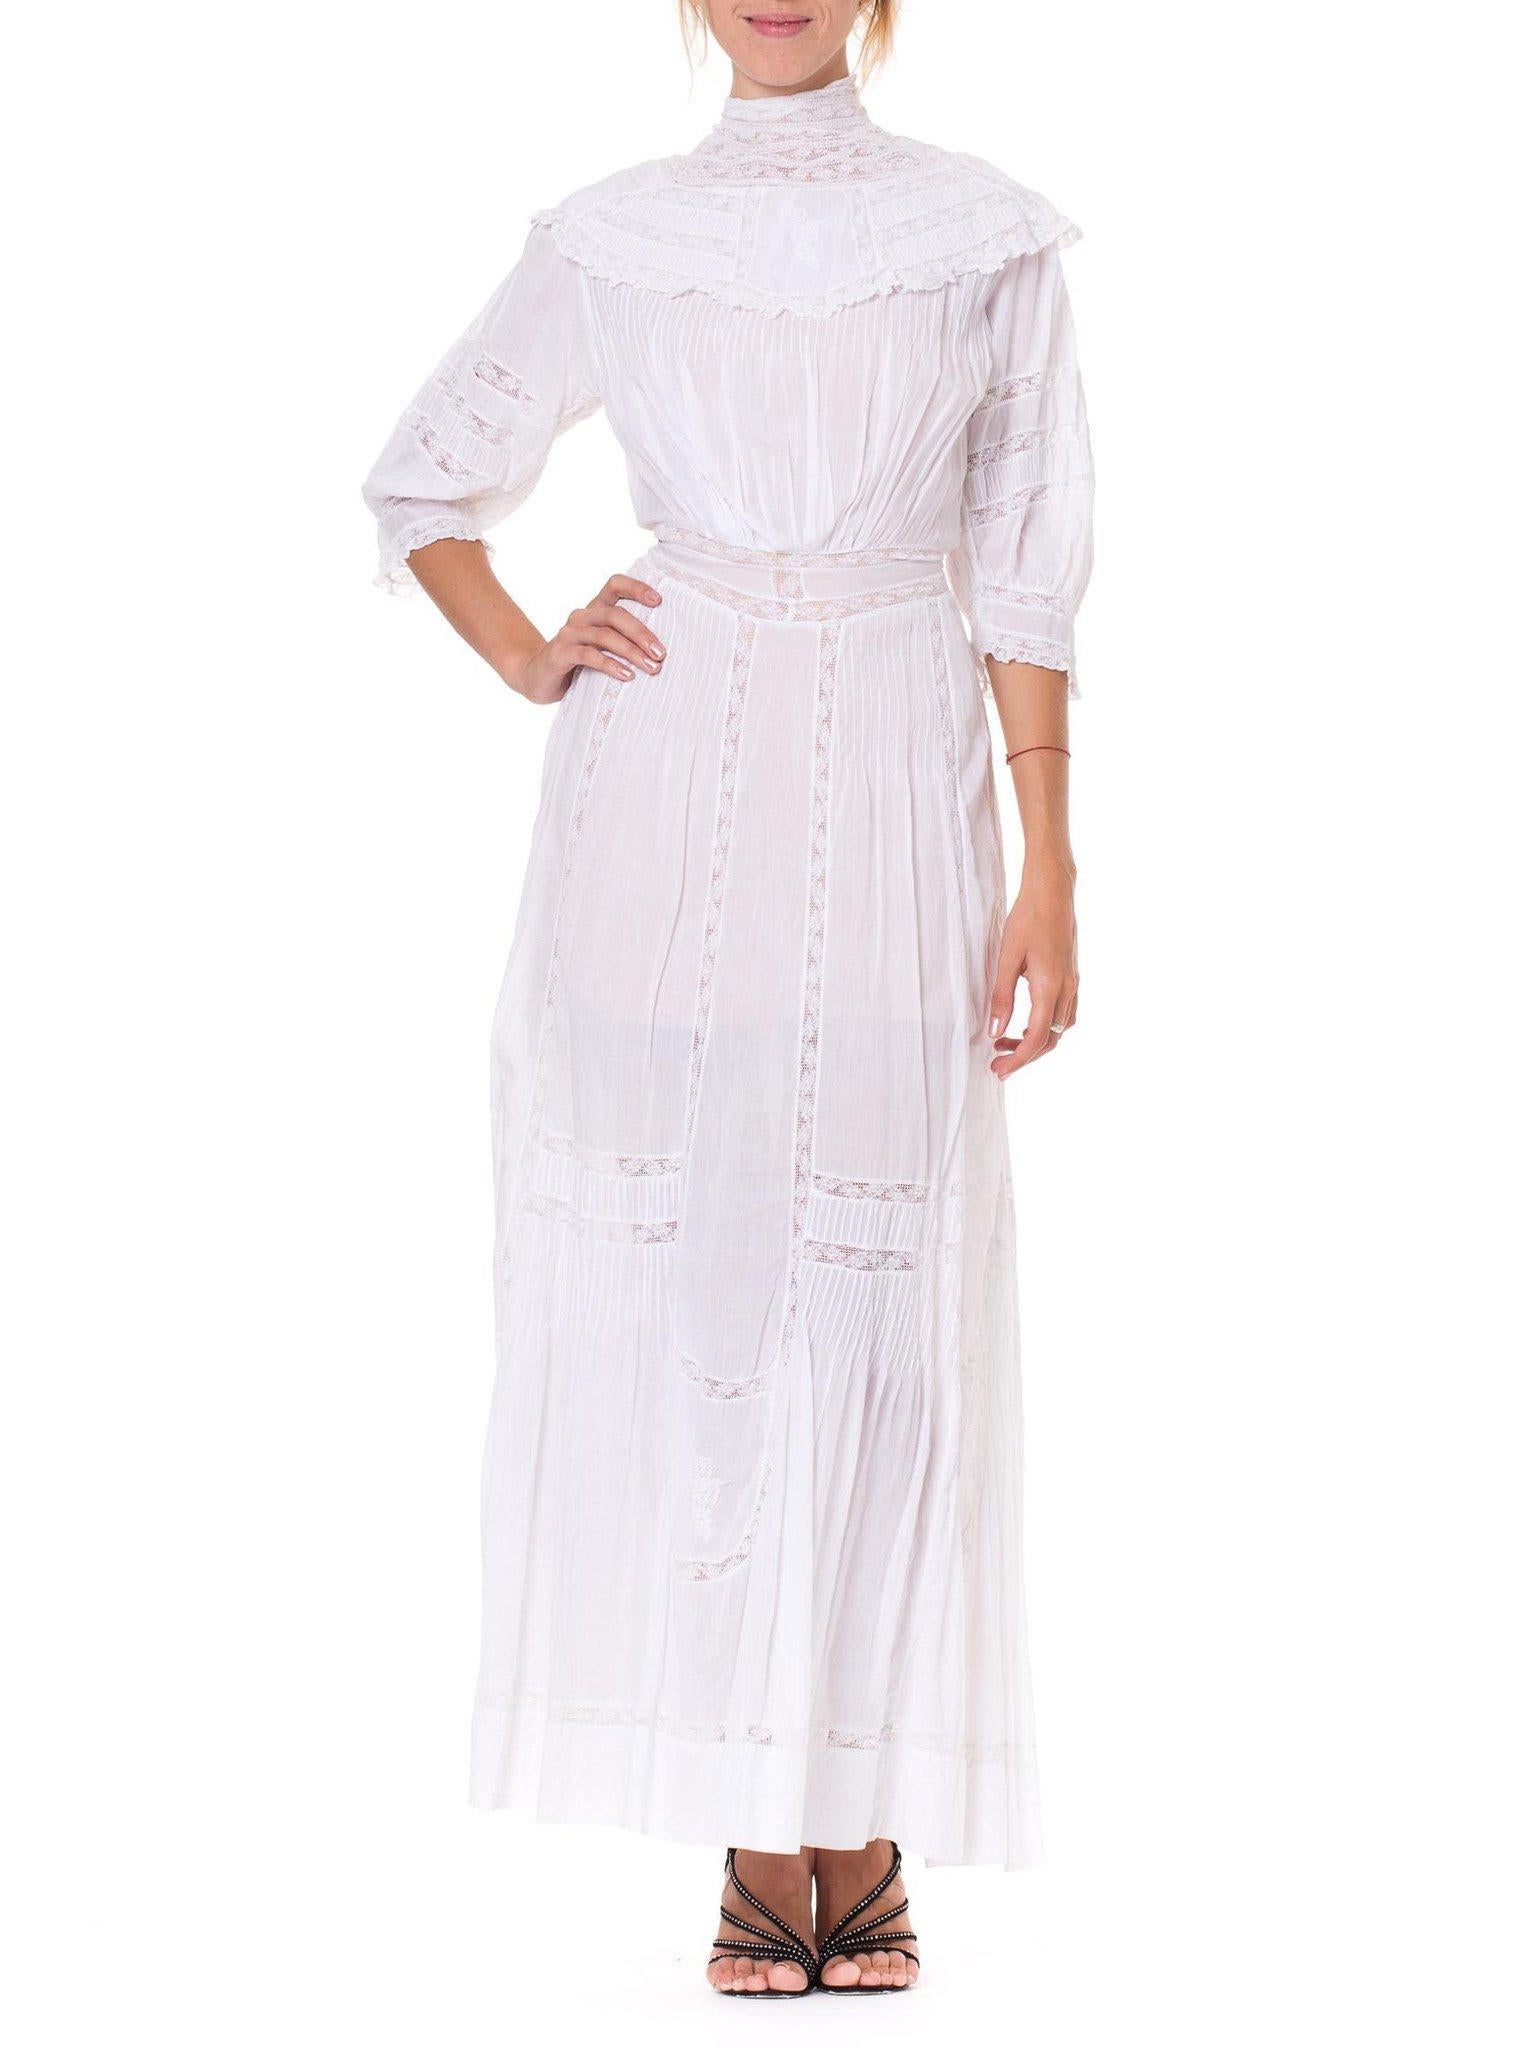 1900s white dress